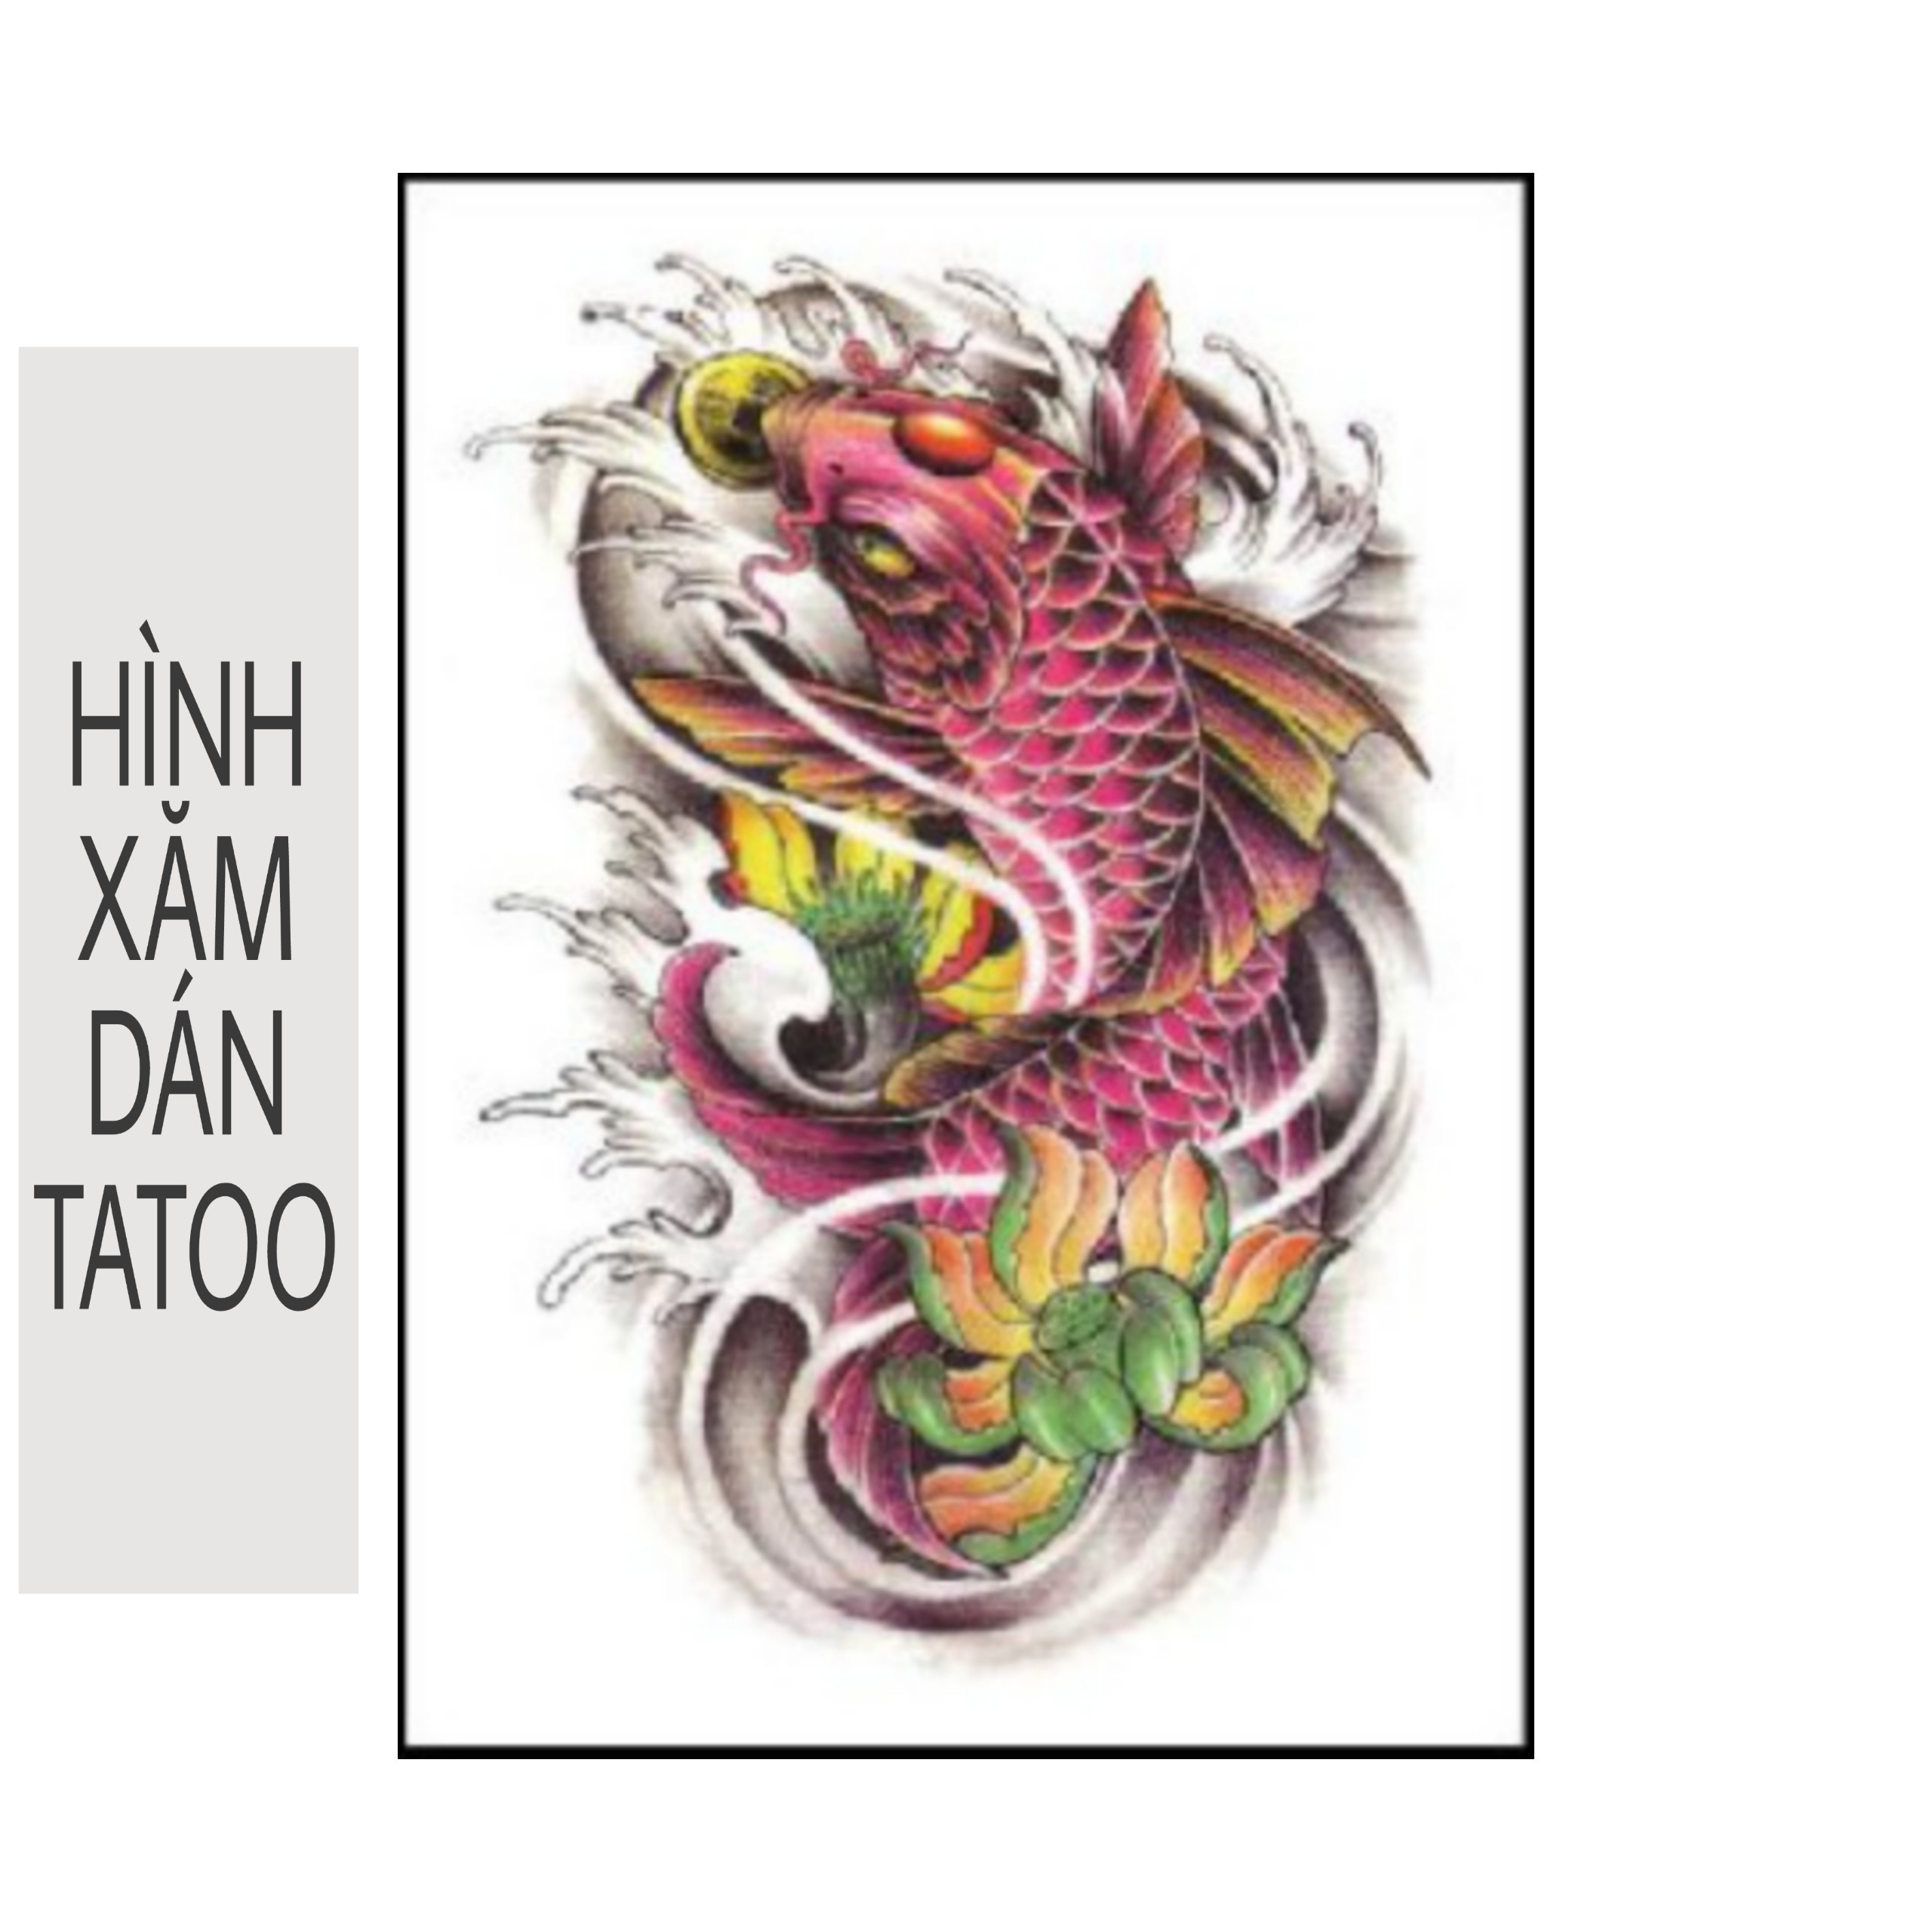 Ý nghĩa hình xăm cá chép trong nghệ thuật tattoo hiện đại